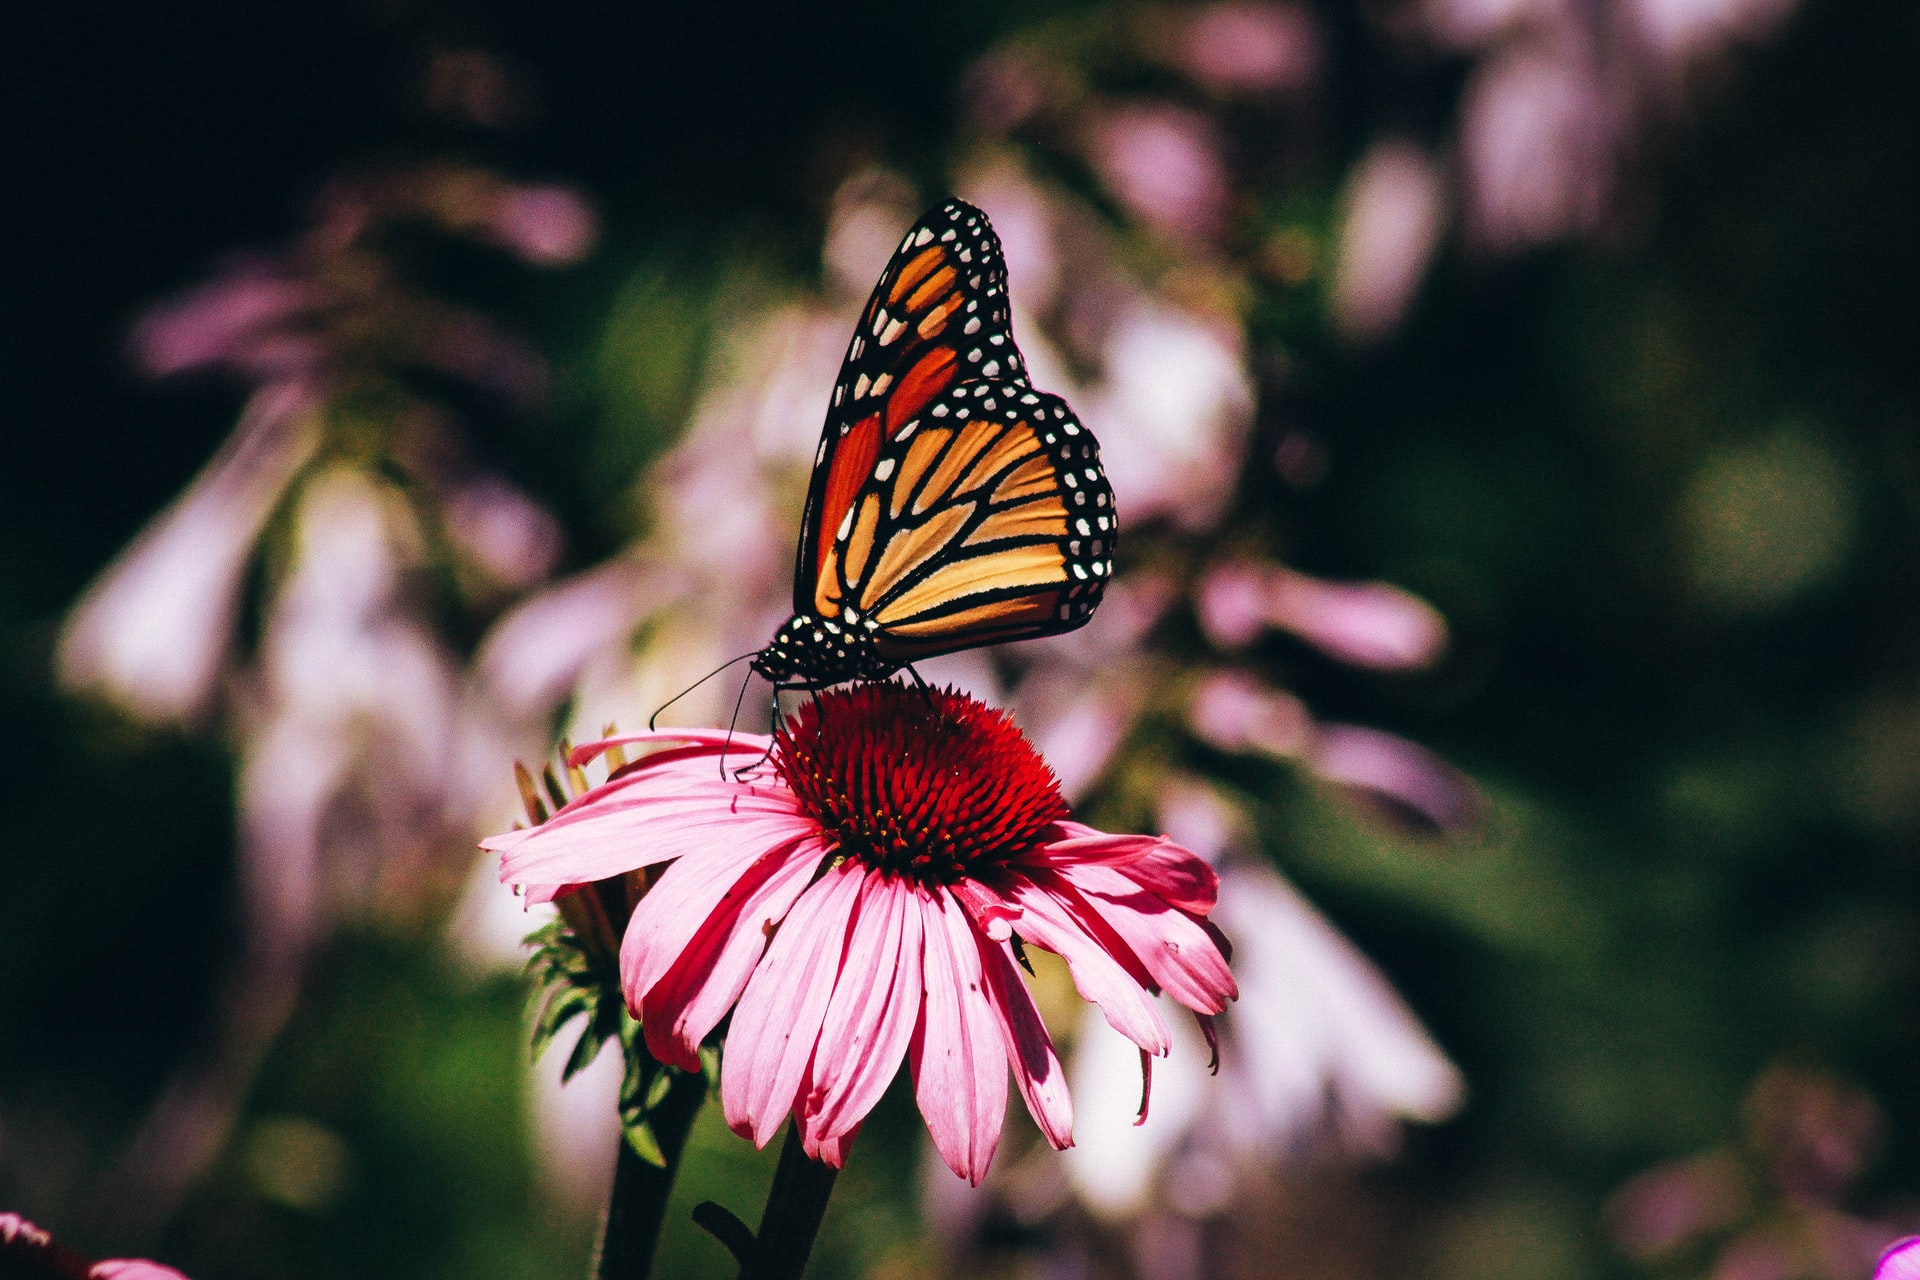 Las mariposas monarca y los esturiones engrosan la lista roja de especies amenazadas